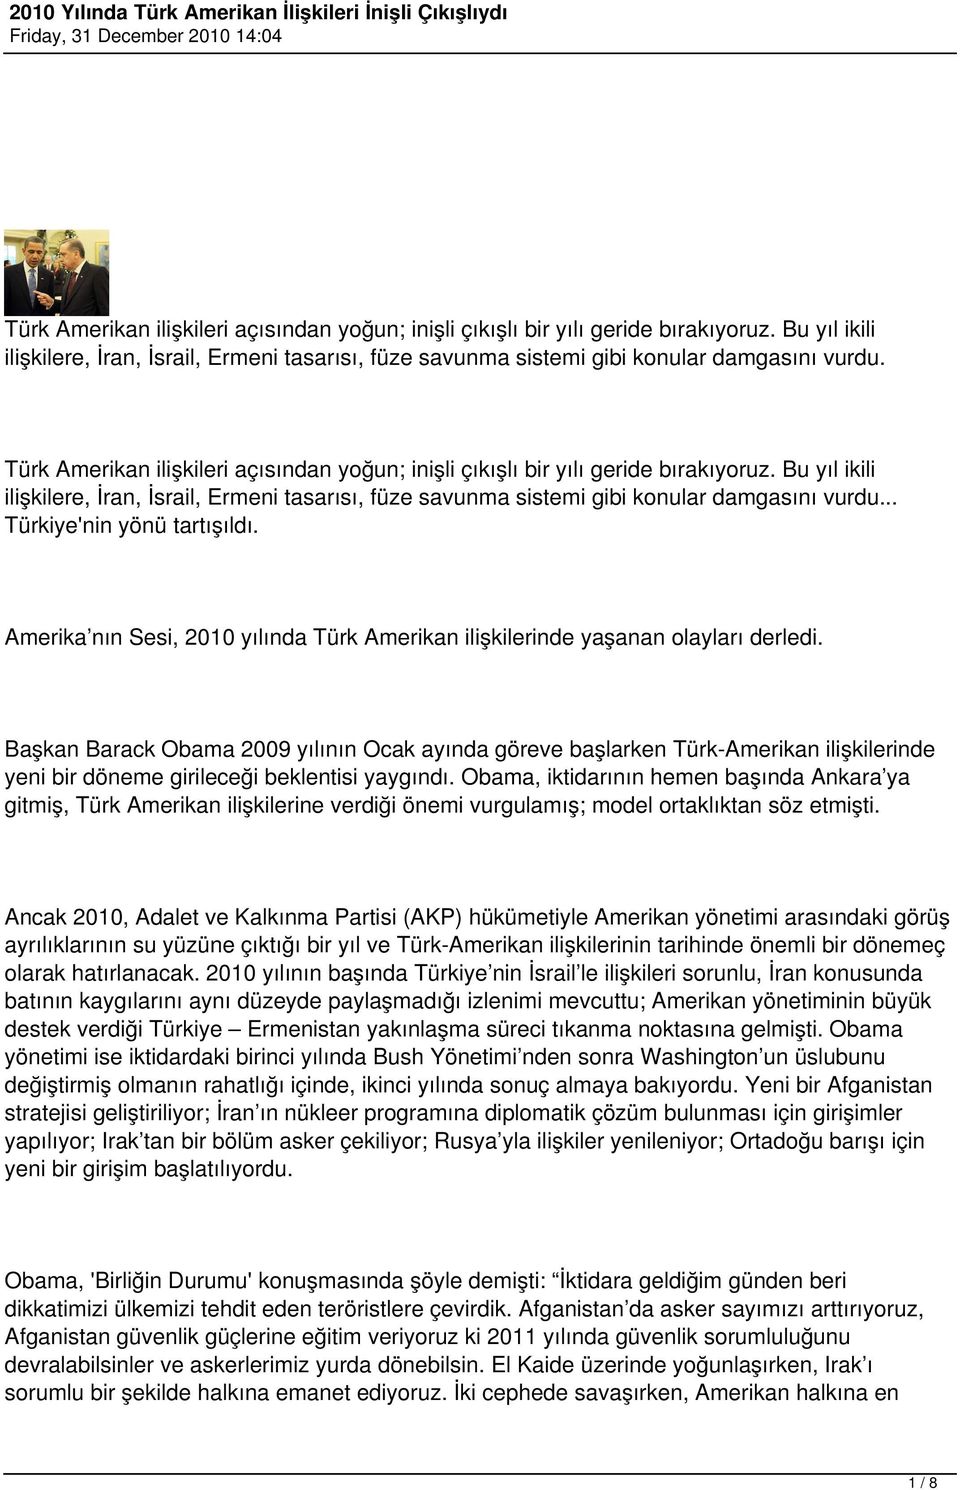 Başkan Barack Obama 2009 yılının Ocak ayında göreve başlarken Türk-Amerikan ilişkilerinde yeni bir döneme girileceği beklentisi yaygındı.